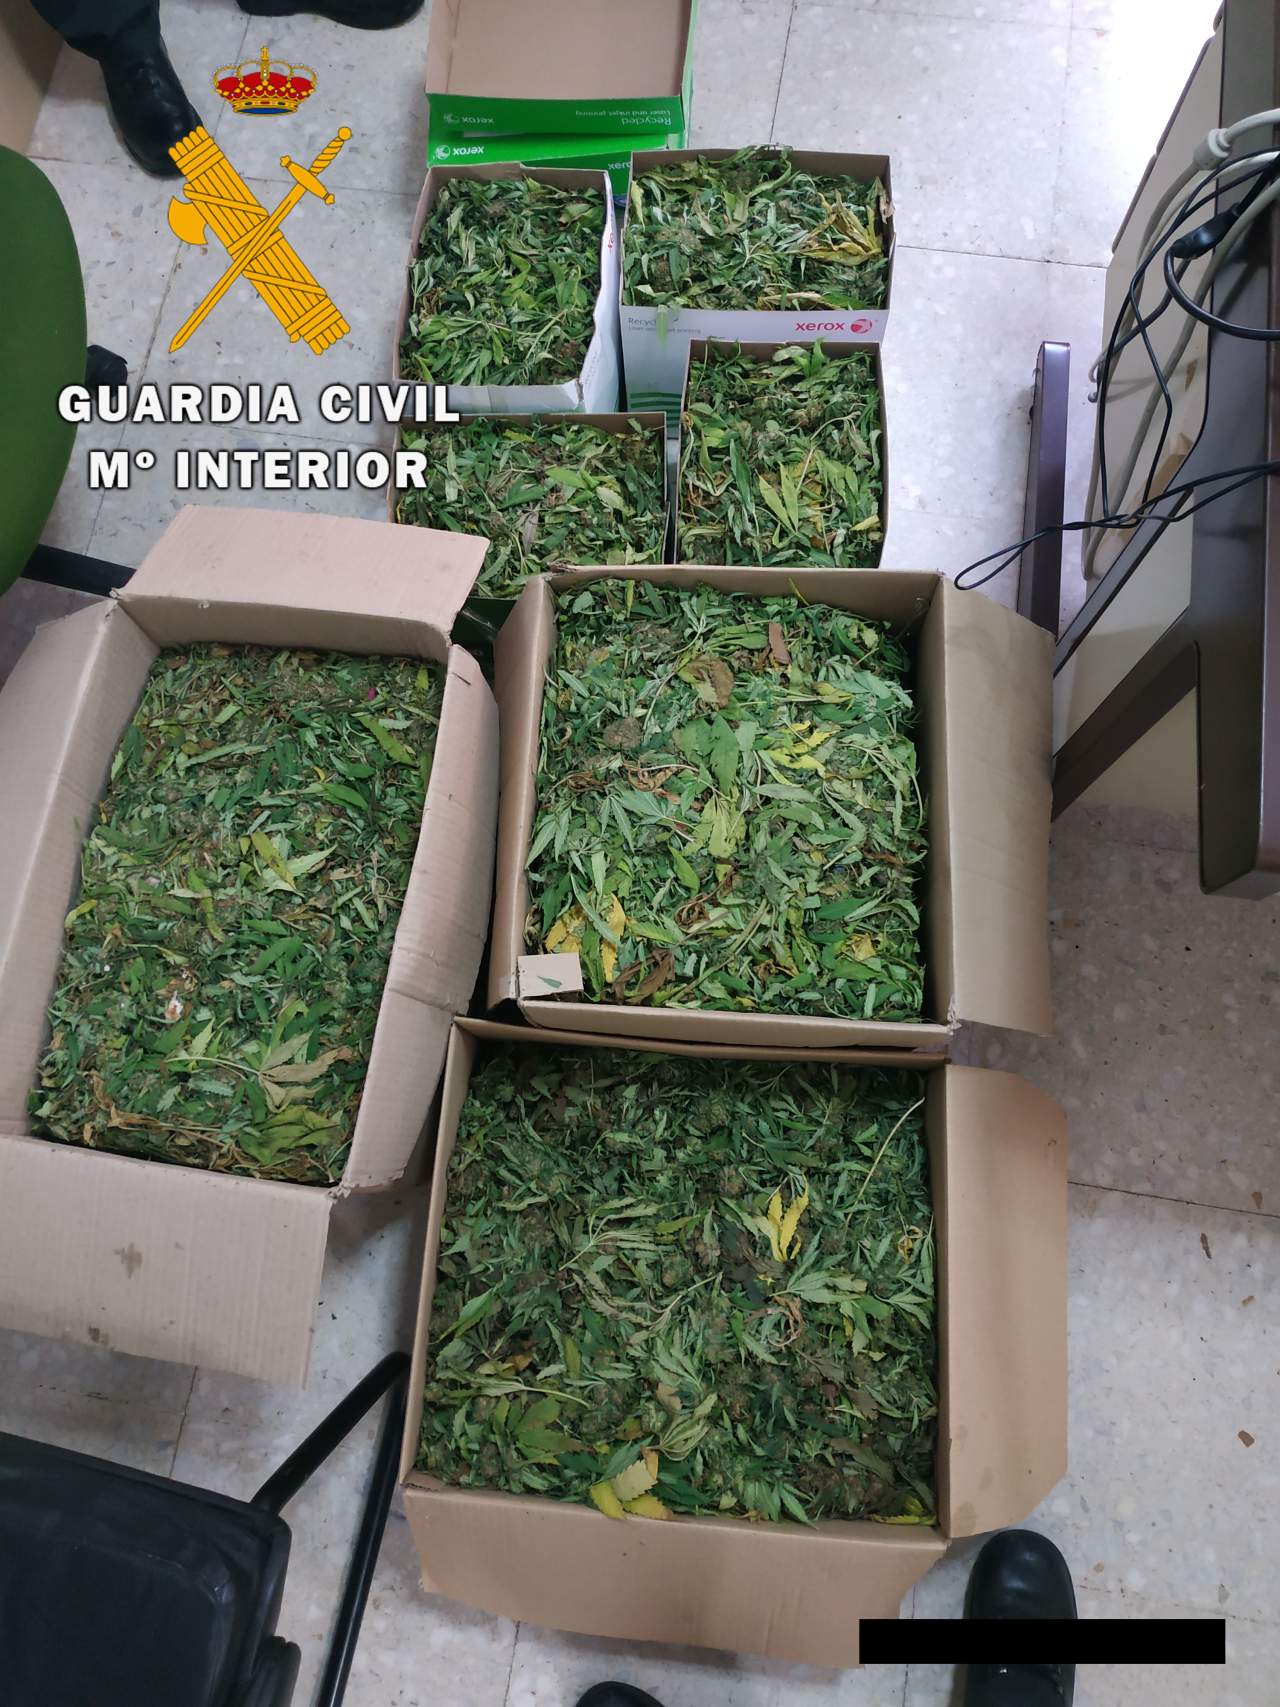 Pillados con casi 50 kilos de marihuana en las localidades toledanas de Sonseca y Polán